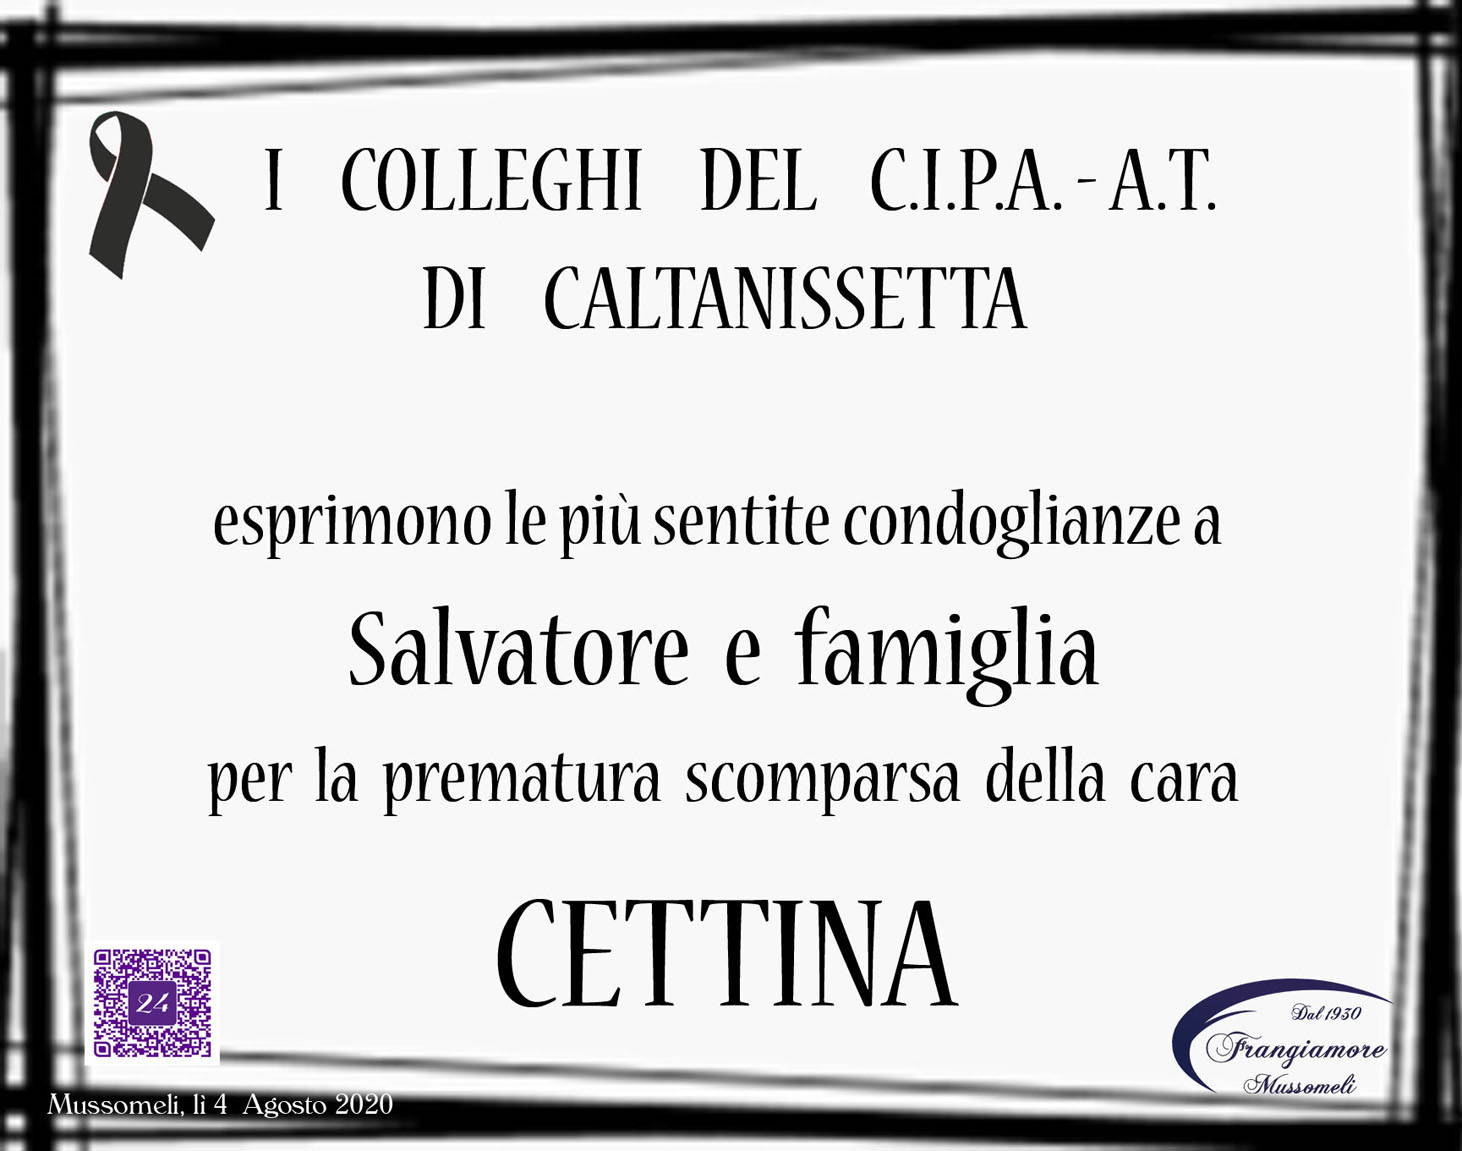 I colleghi del C.I.P.A.- A.T. di Caltanissetta